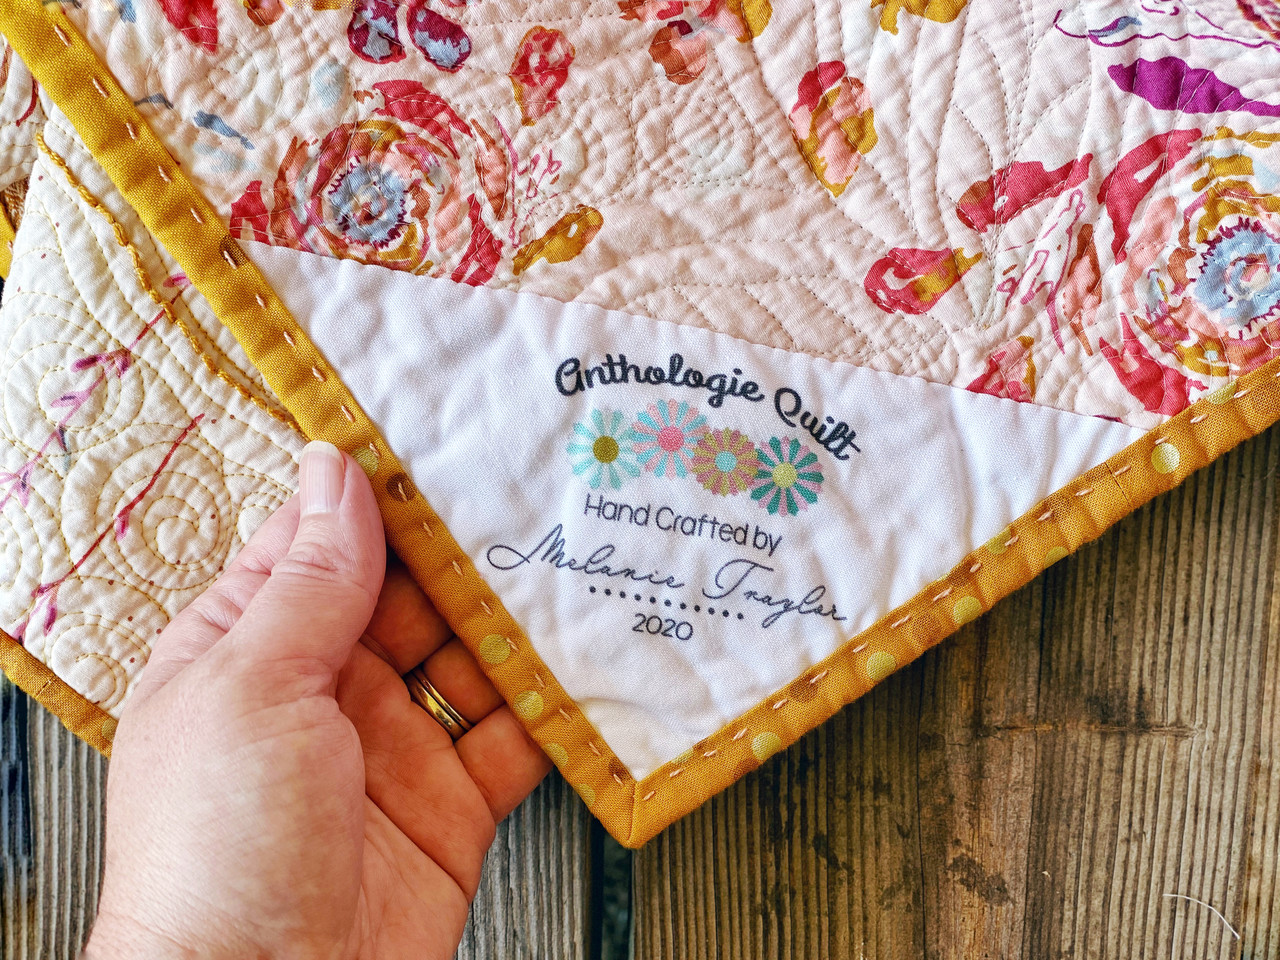 Custom Embroidered Quilt Label Triangular Corner Label Fabric